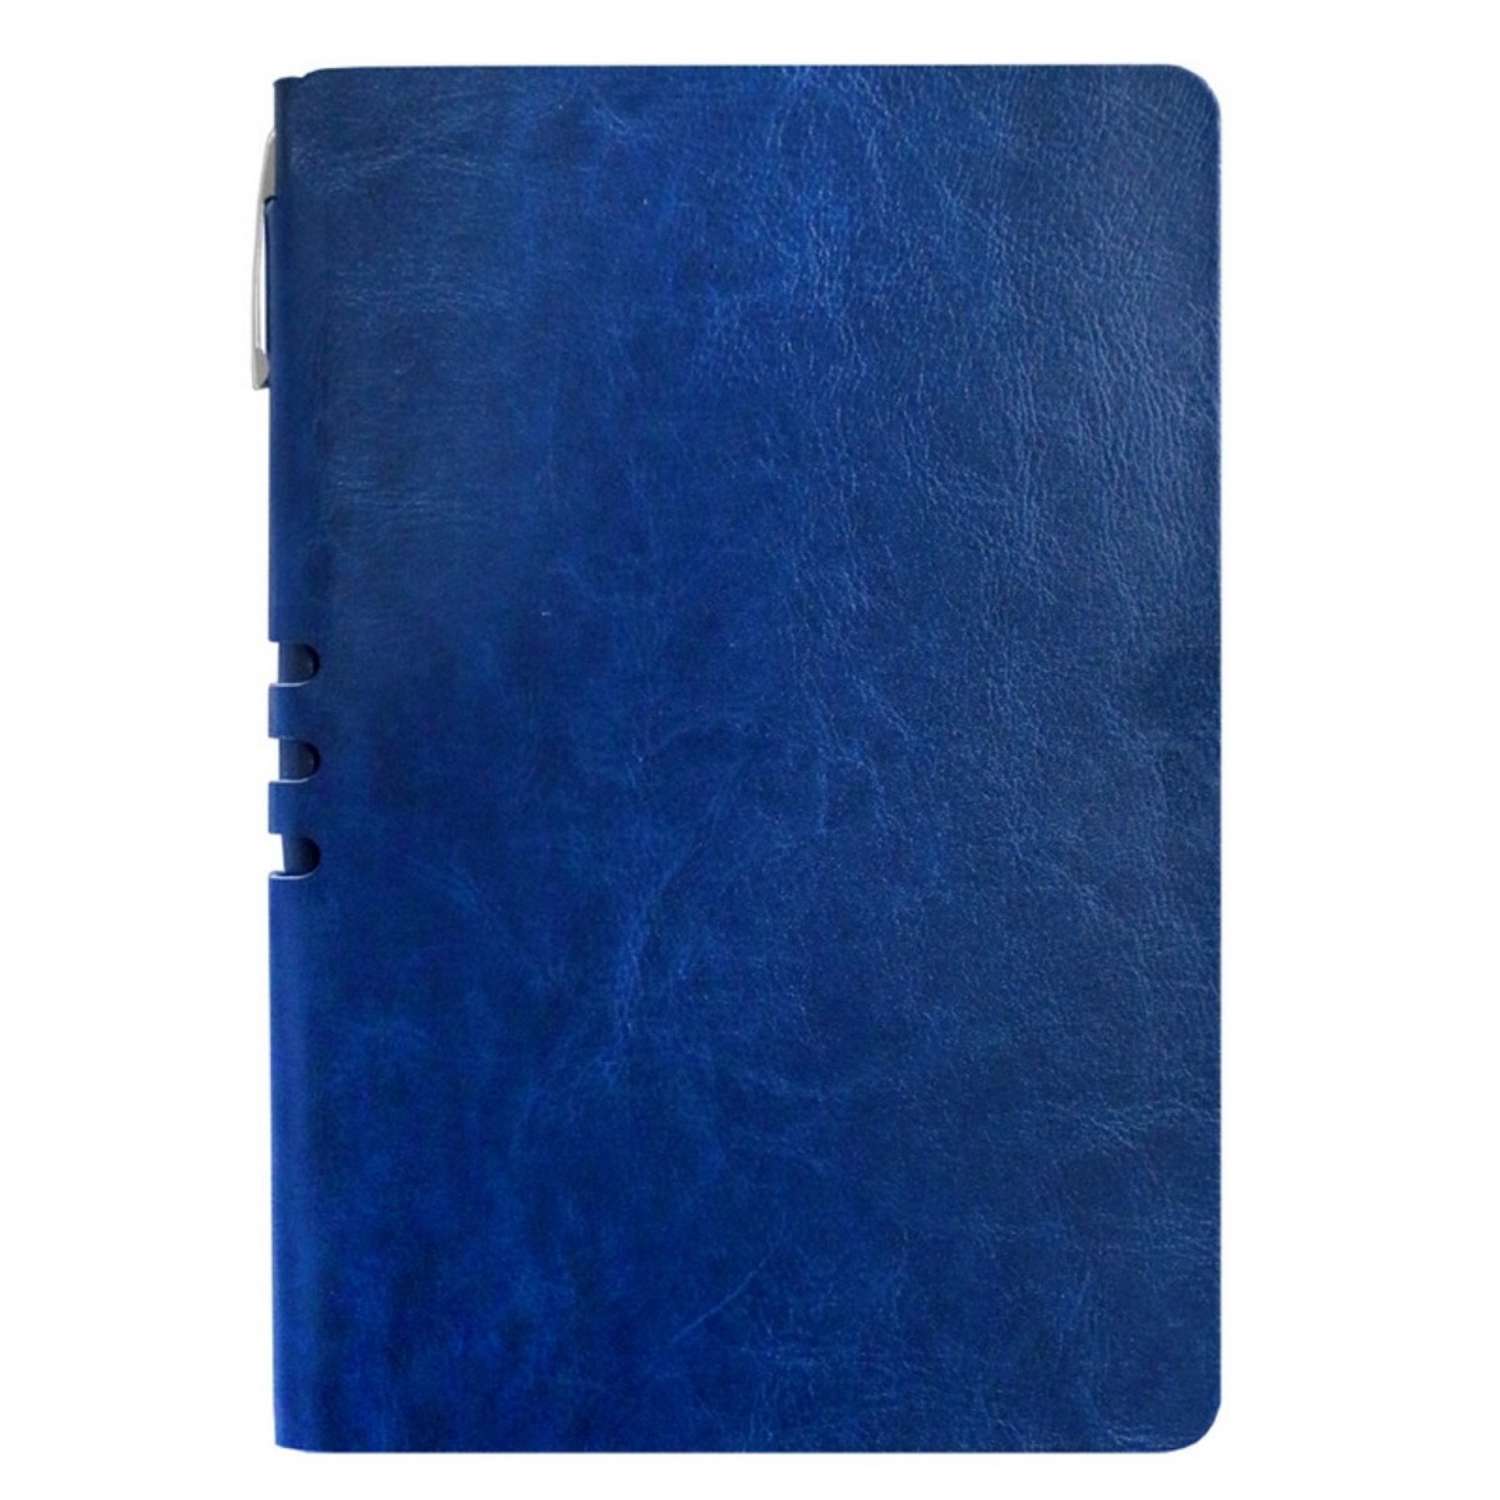 Бизнес-тетрадь Attache Light Book А5 112 листов линия цветной срез кожзаменитель темно-синий - фото 1